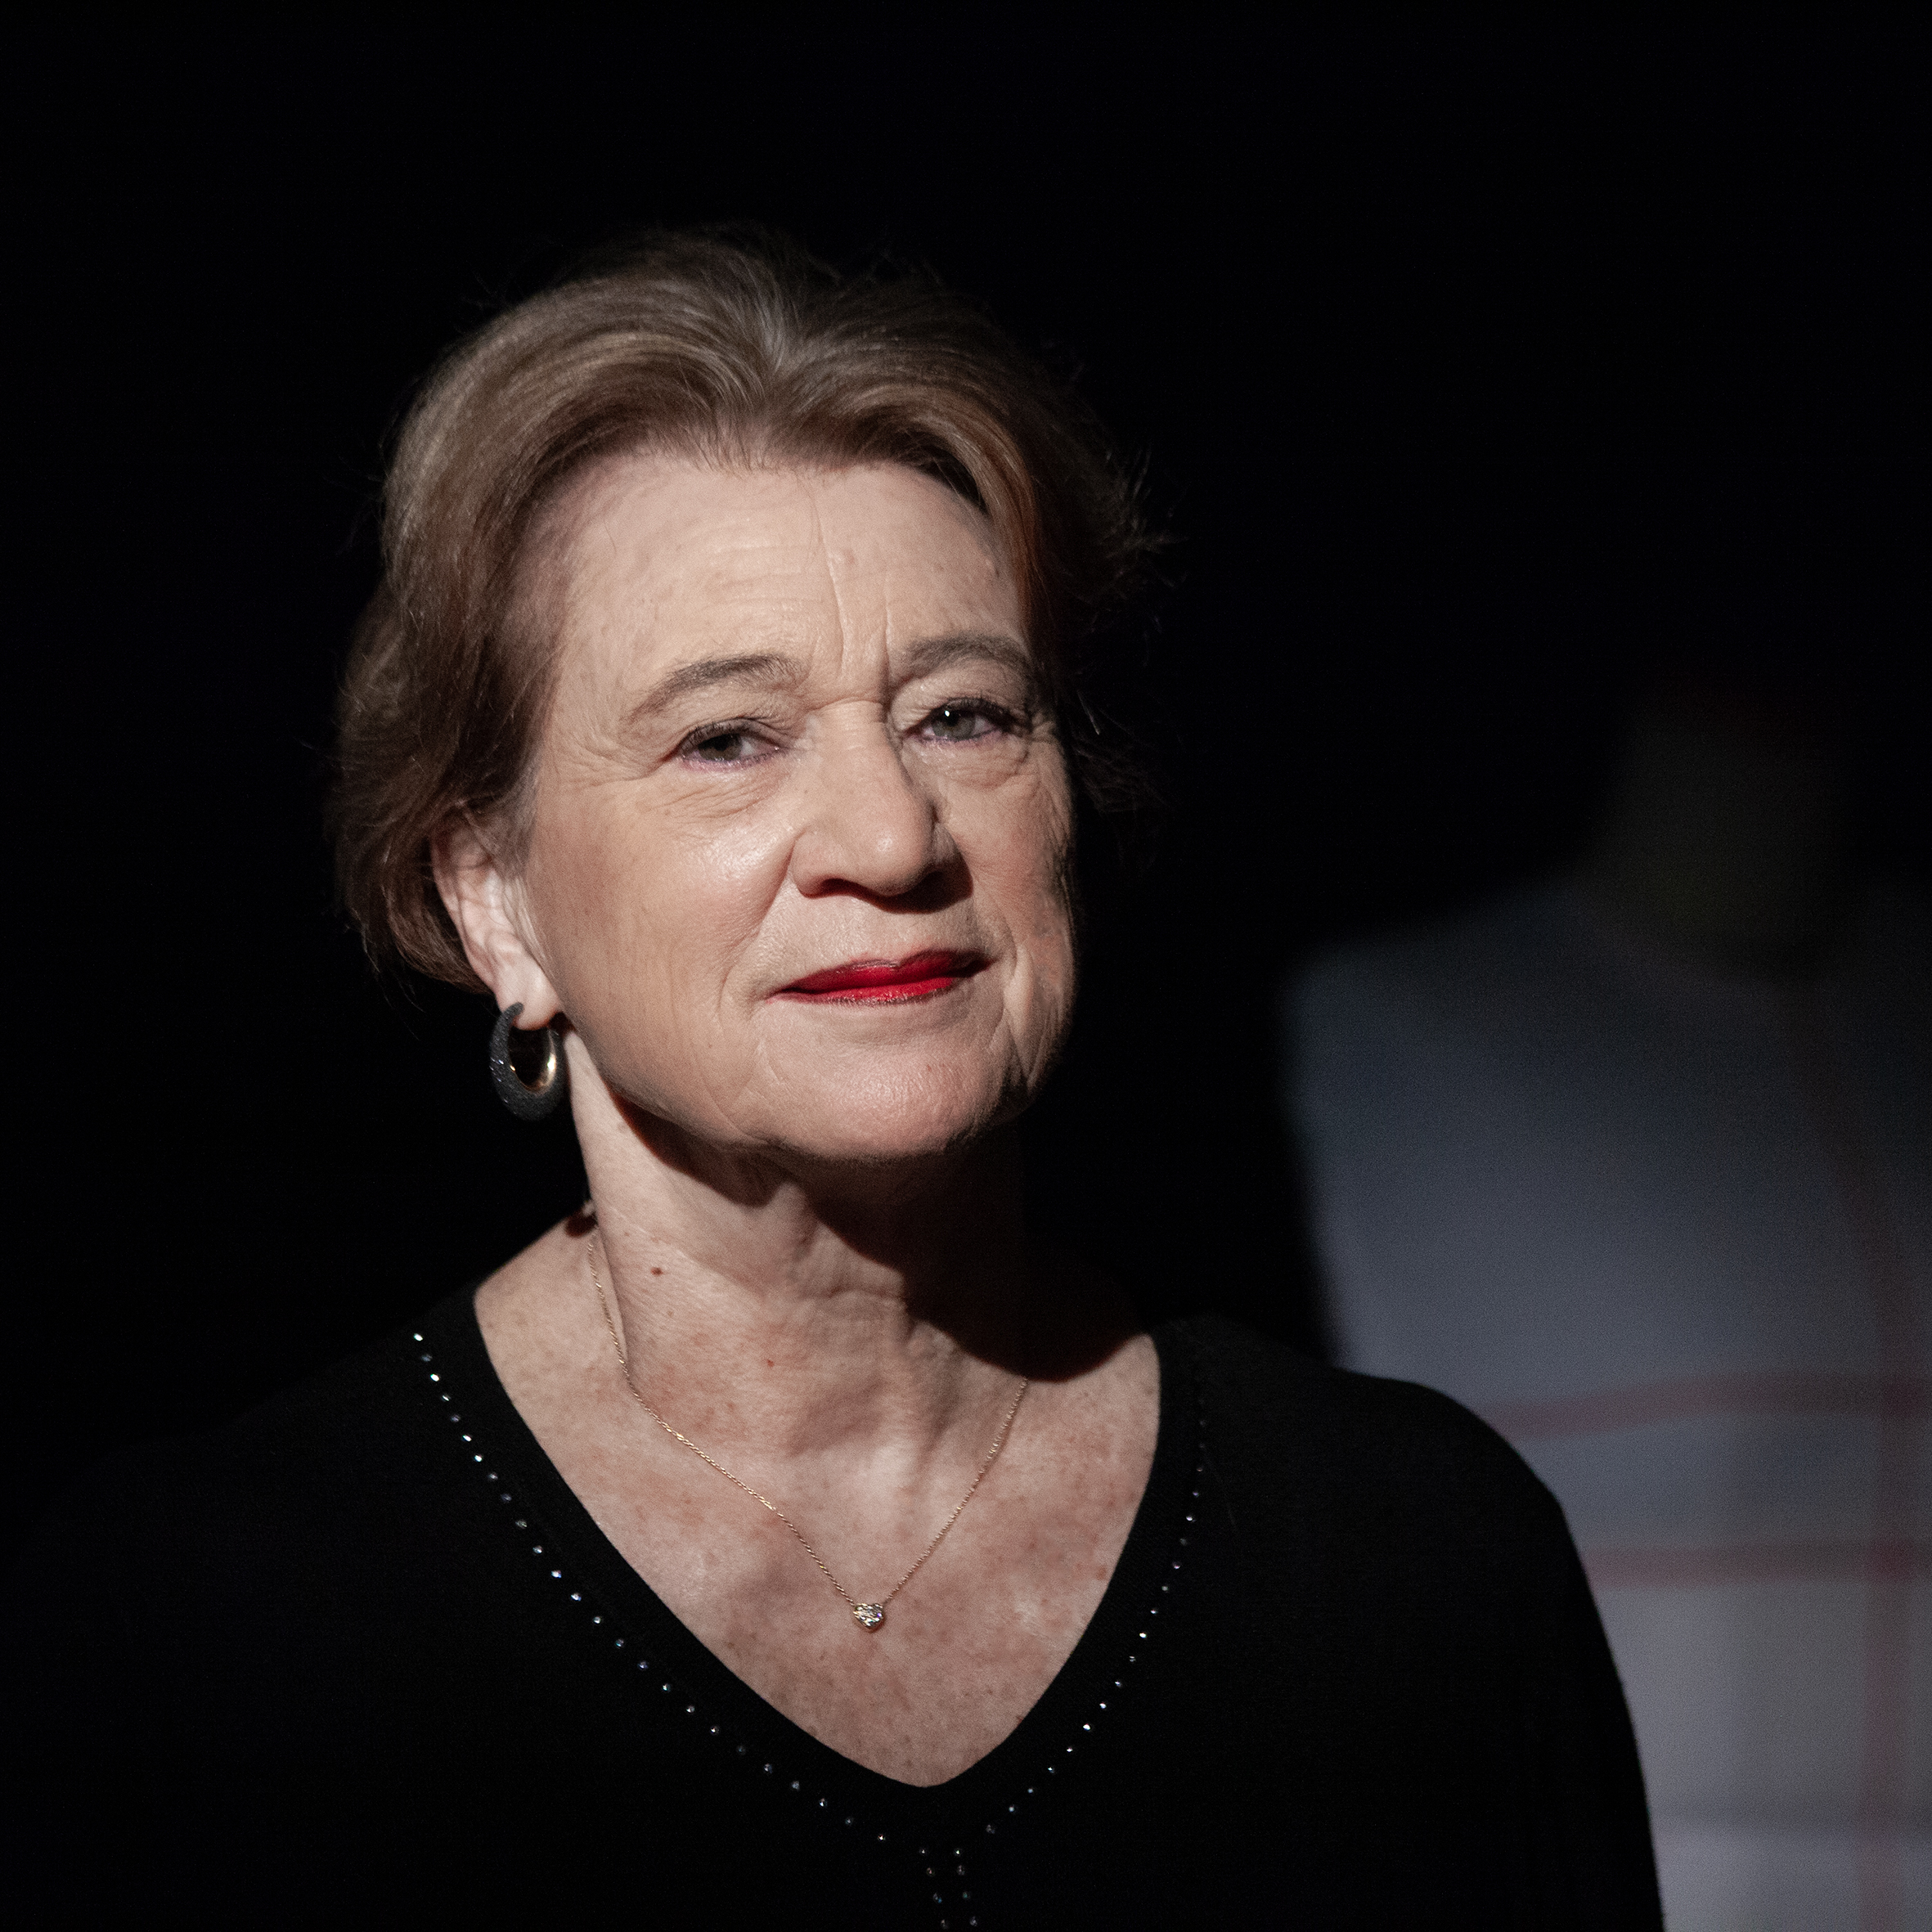 Aujourd’hui âgée de 78 ans, Colette Maciet devenue première d'atelier à 30 ans dans la maison Chanel, raconte son histoire dans un livre intitulé «Haute couture», paru chez Michel Lafon. Gilles Maciet